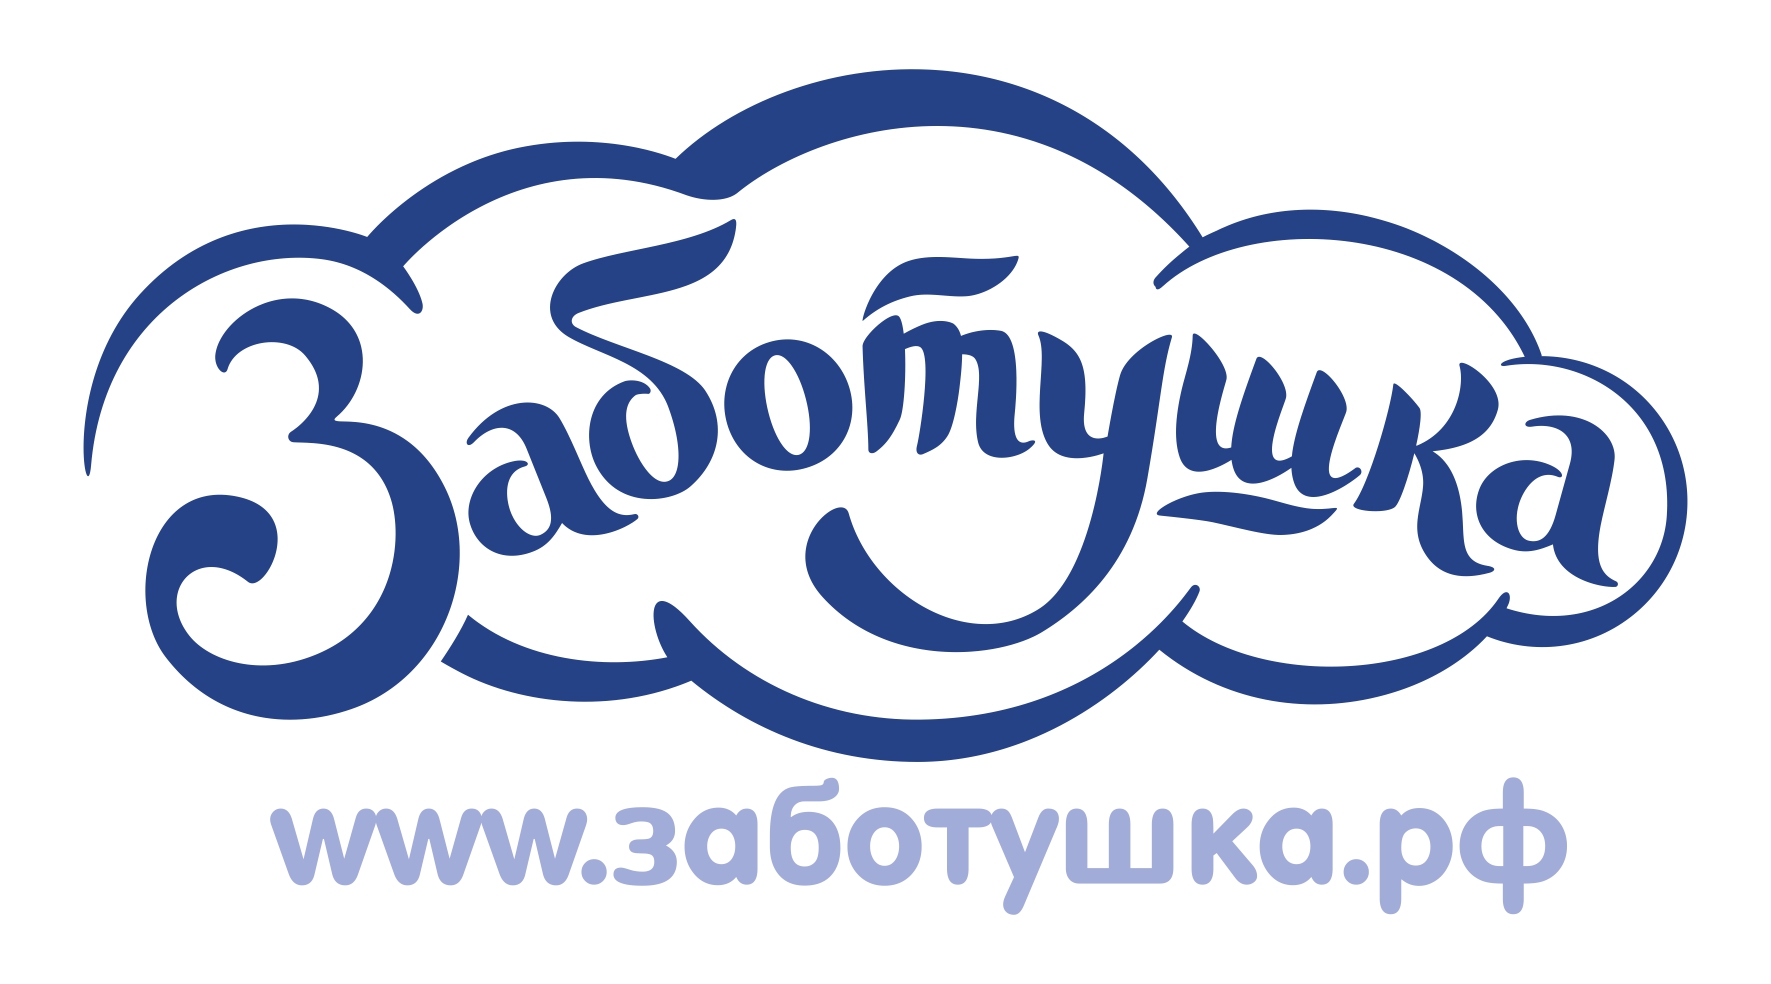 ООО “ЗАБОТУШКА” производитель и продавец стерильной одноразовой продукции высокого качества на территории РФ и Евросоюза